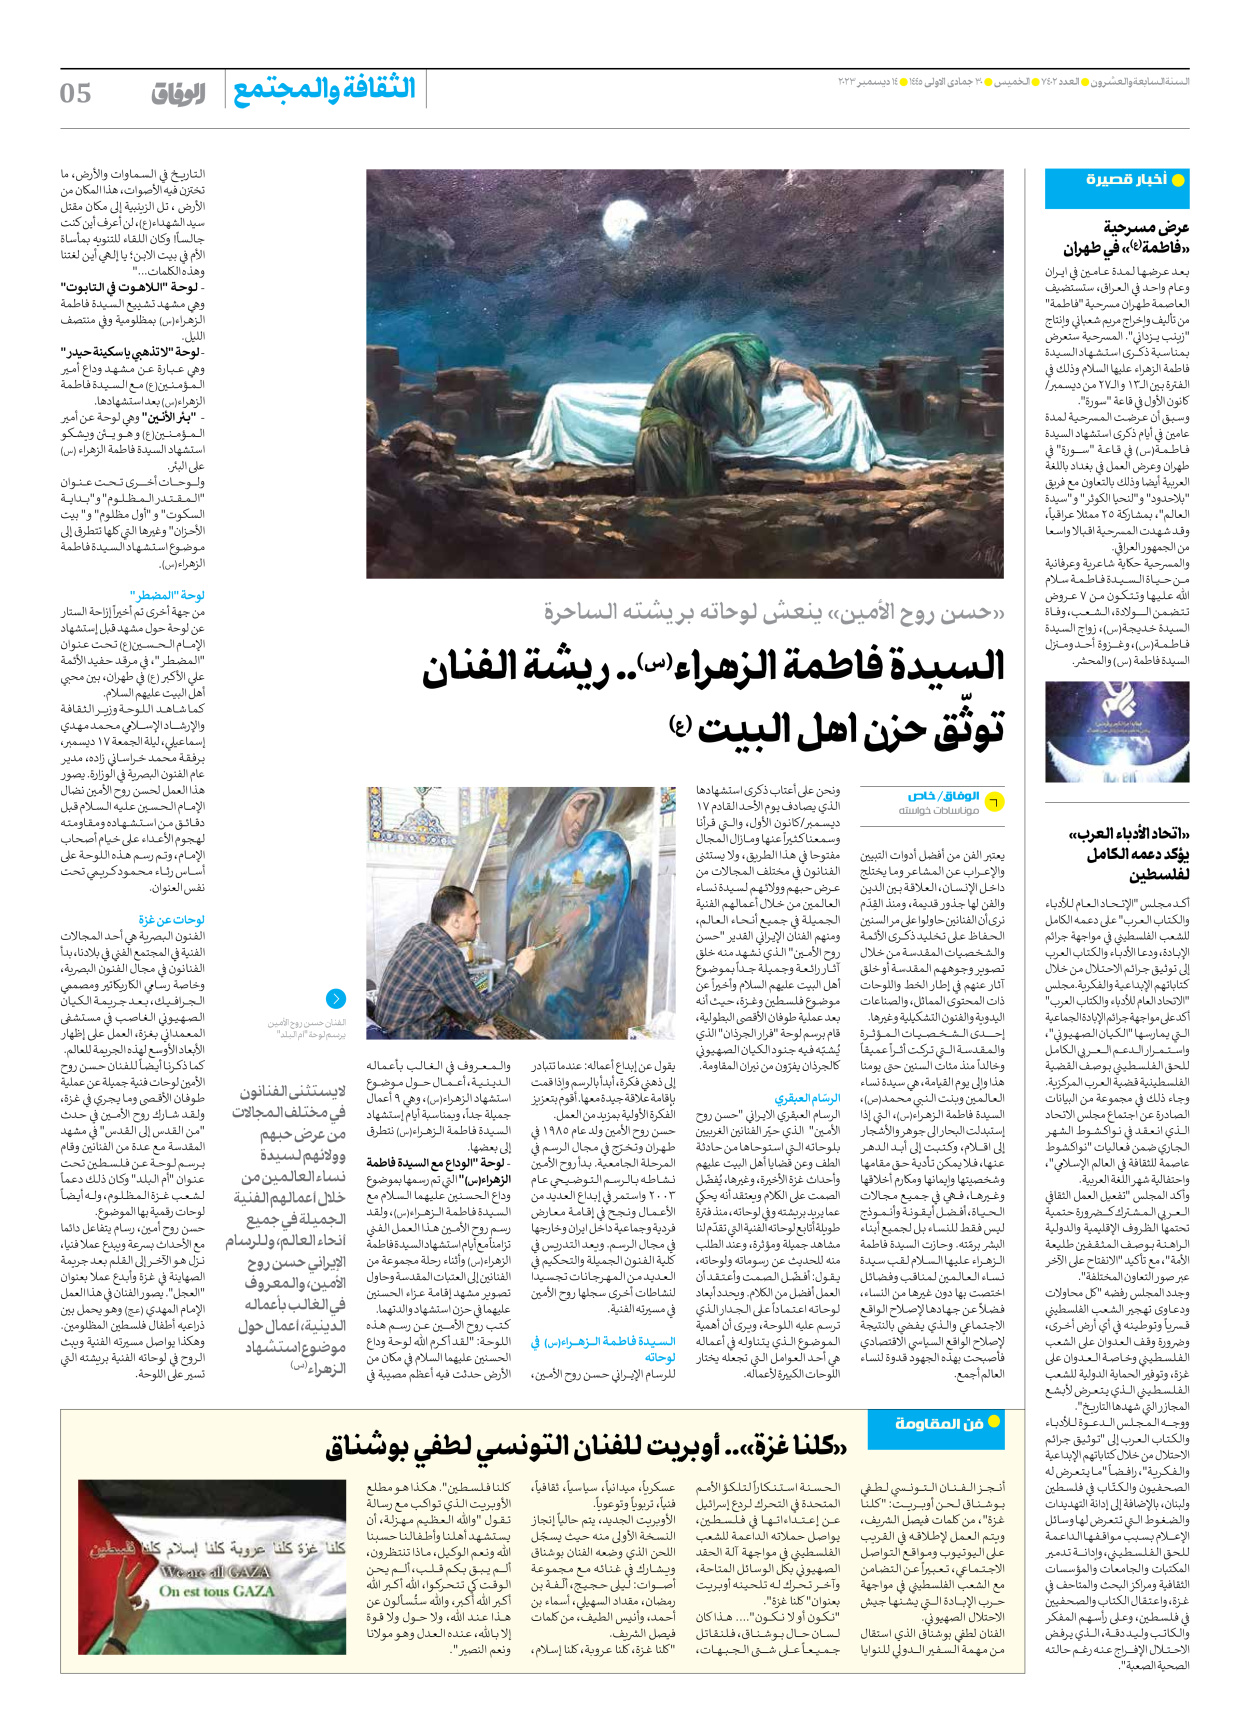 صحیفة ایران الدولیة الوفاق - العدد سبعة آلاف وأربعمائة واثنان - ١٤ ديسمبر ٢٠٢٣ - الصفحة ٥